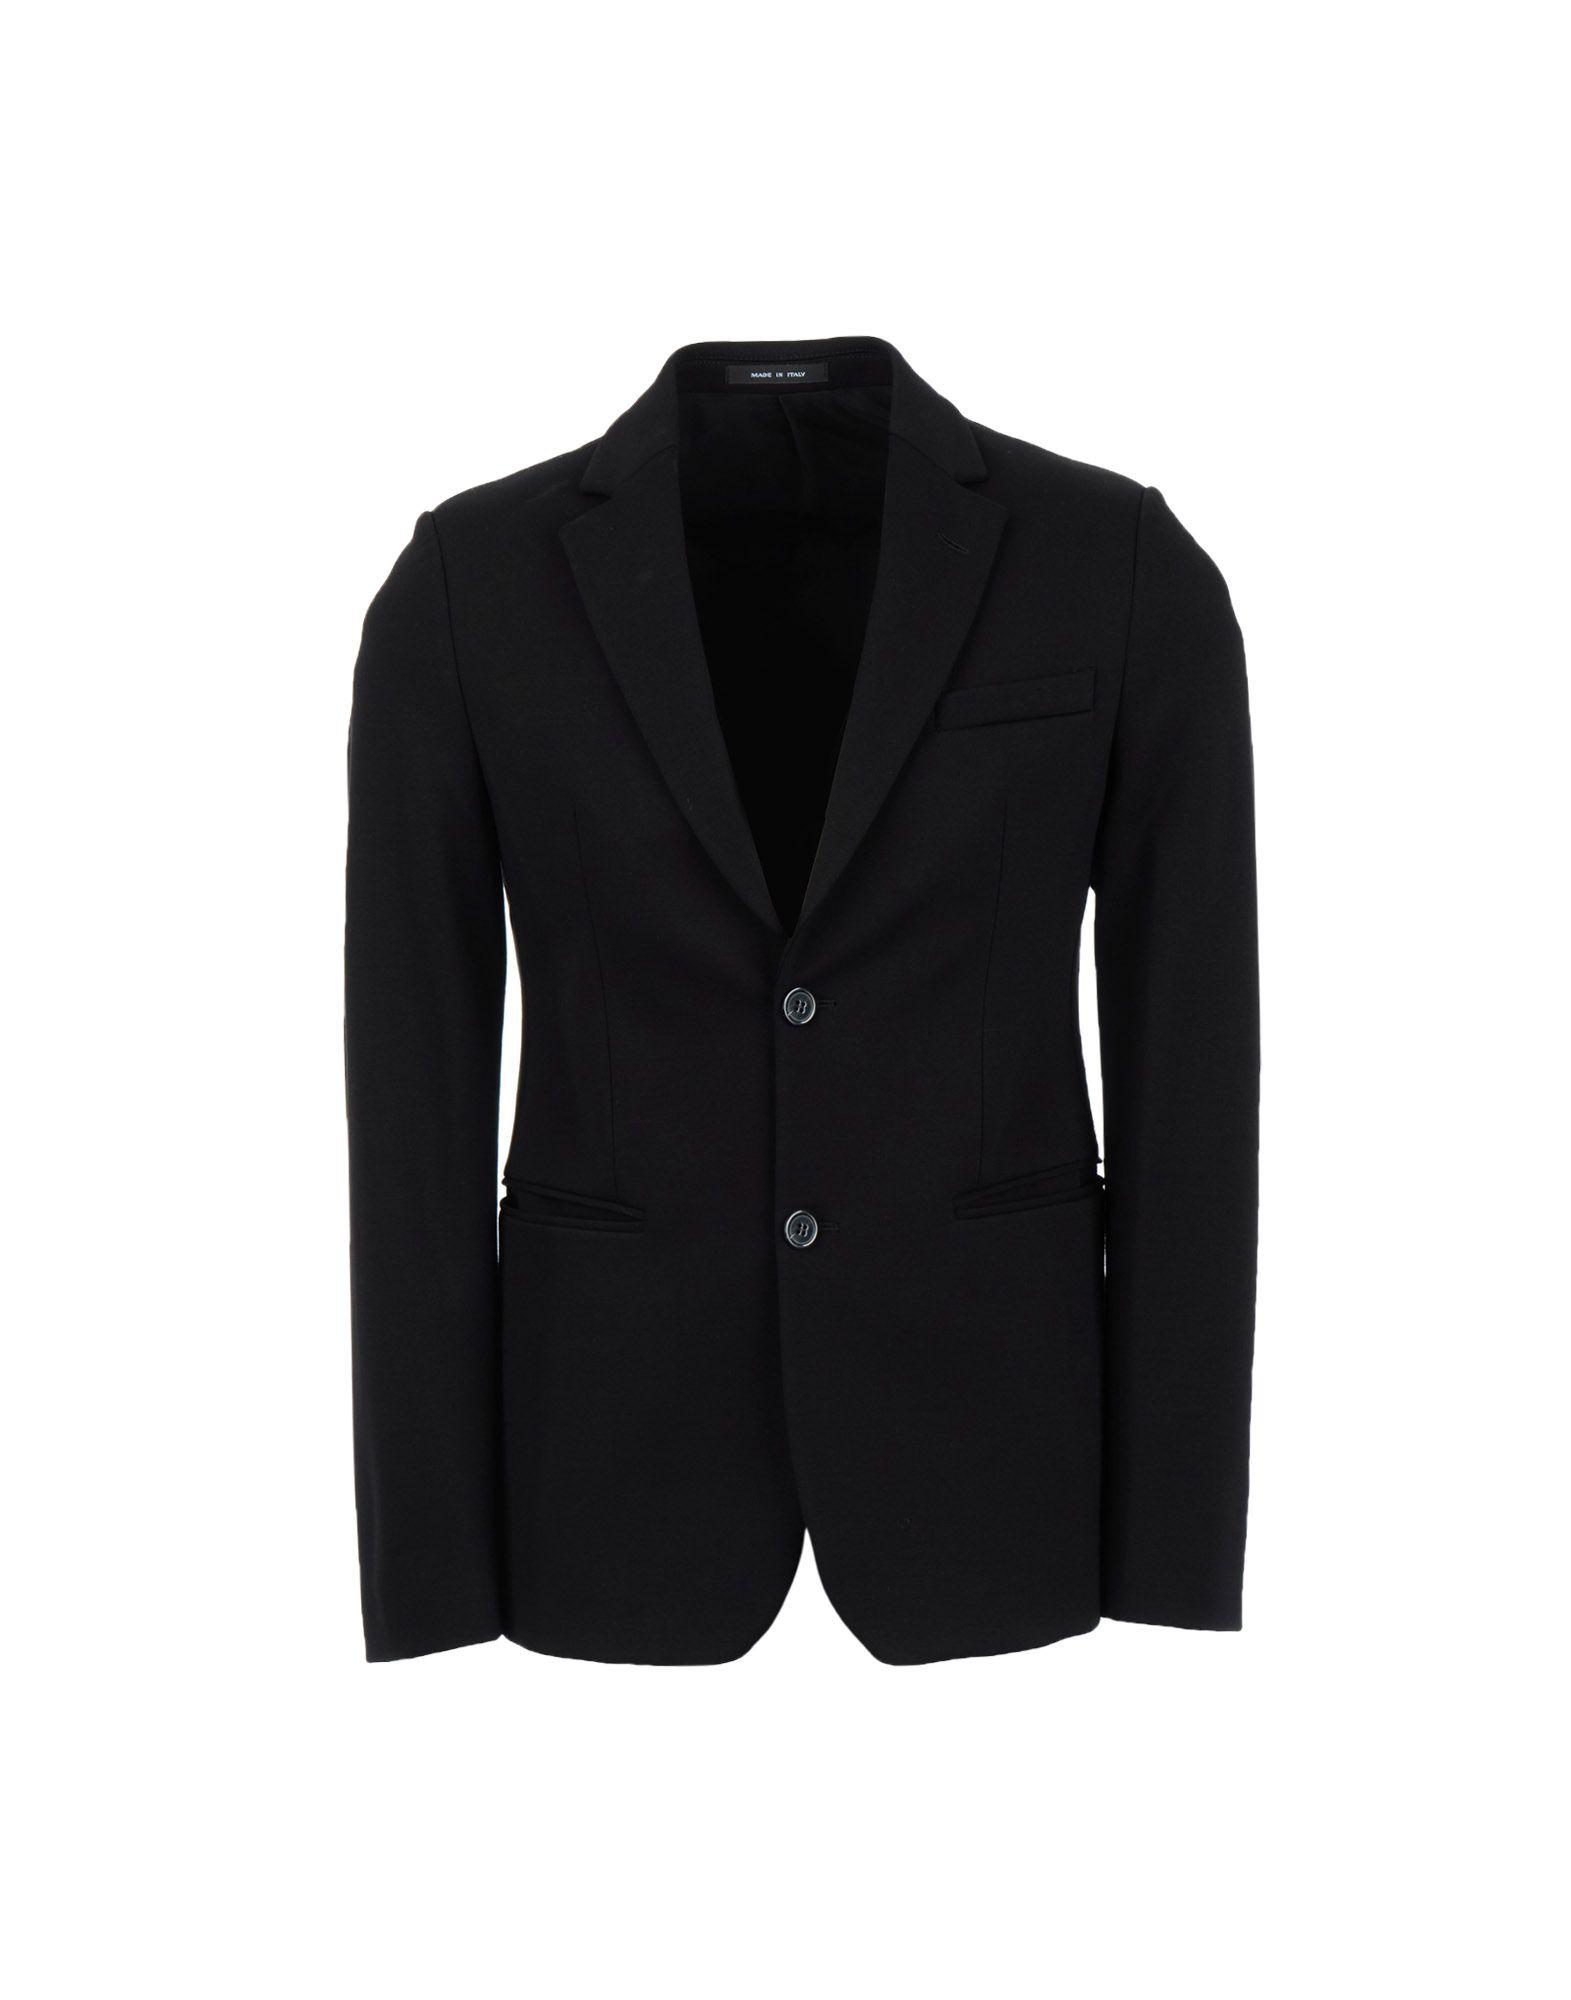 Lyst - Emporio Armani Blazer in Black for Men